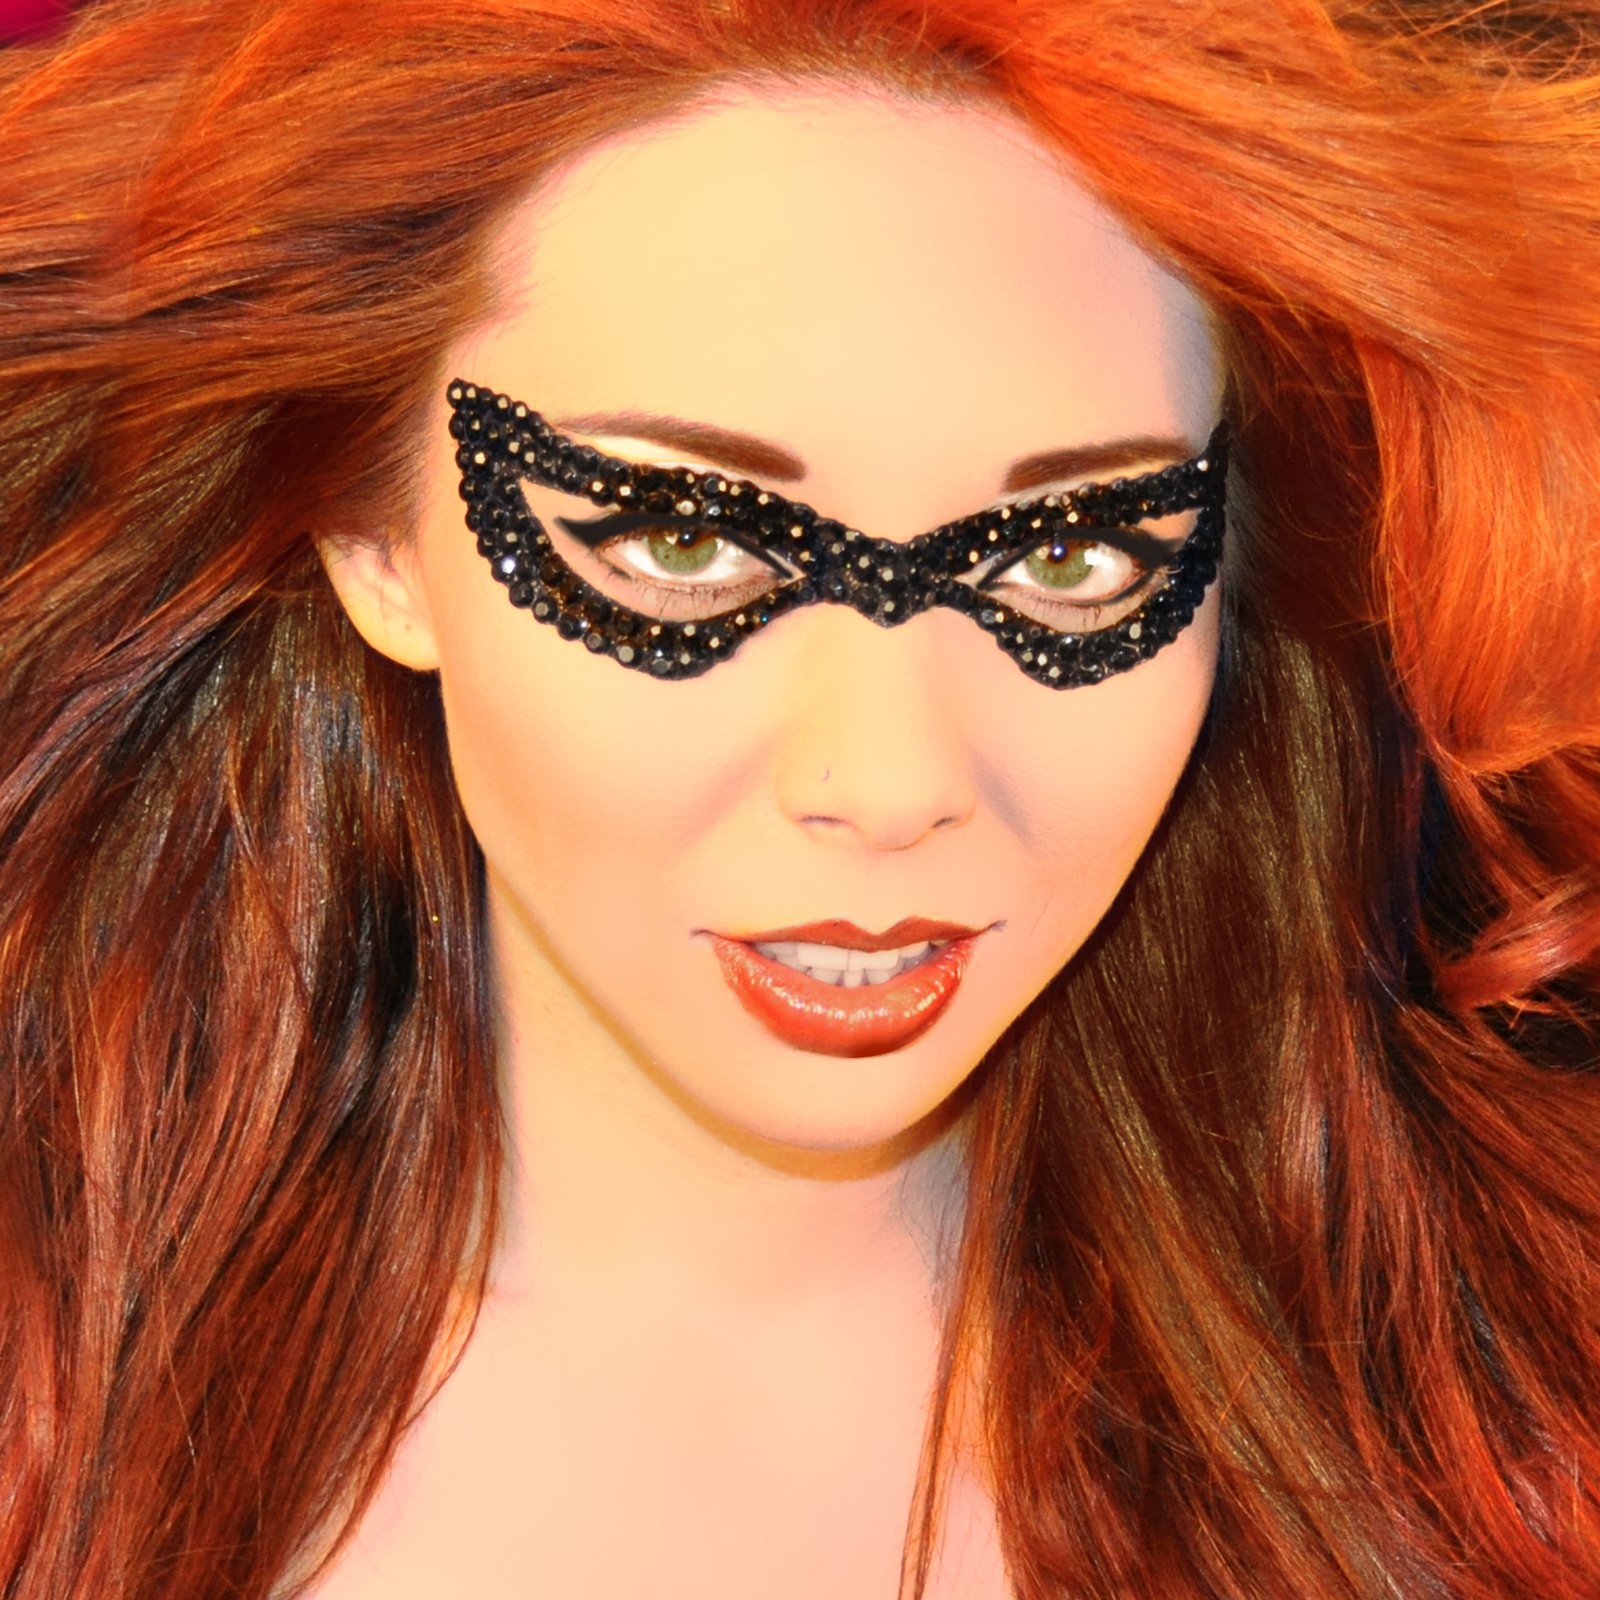 Xotic Eyes Bat Wing Girl Mask - Click Image to Close